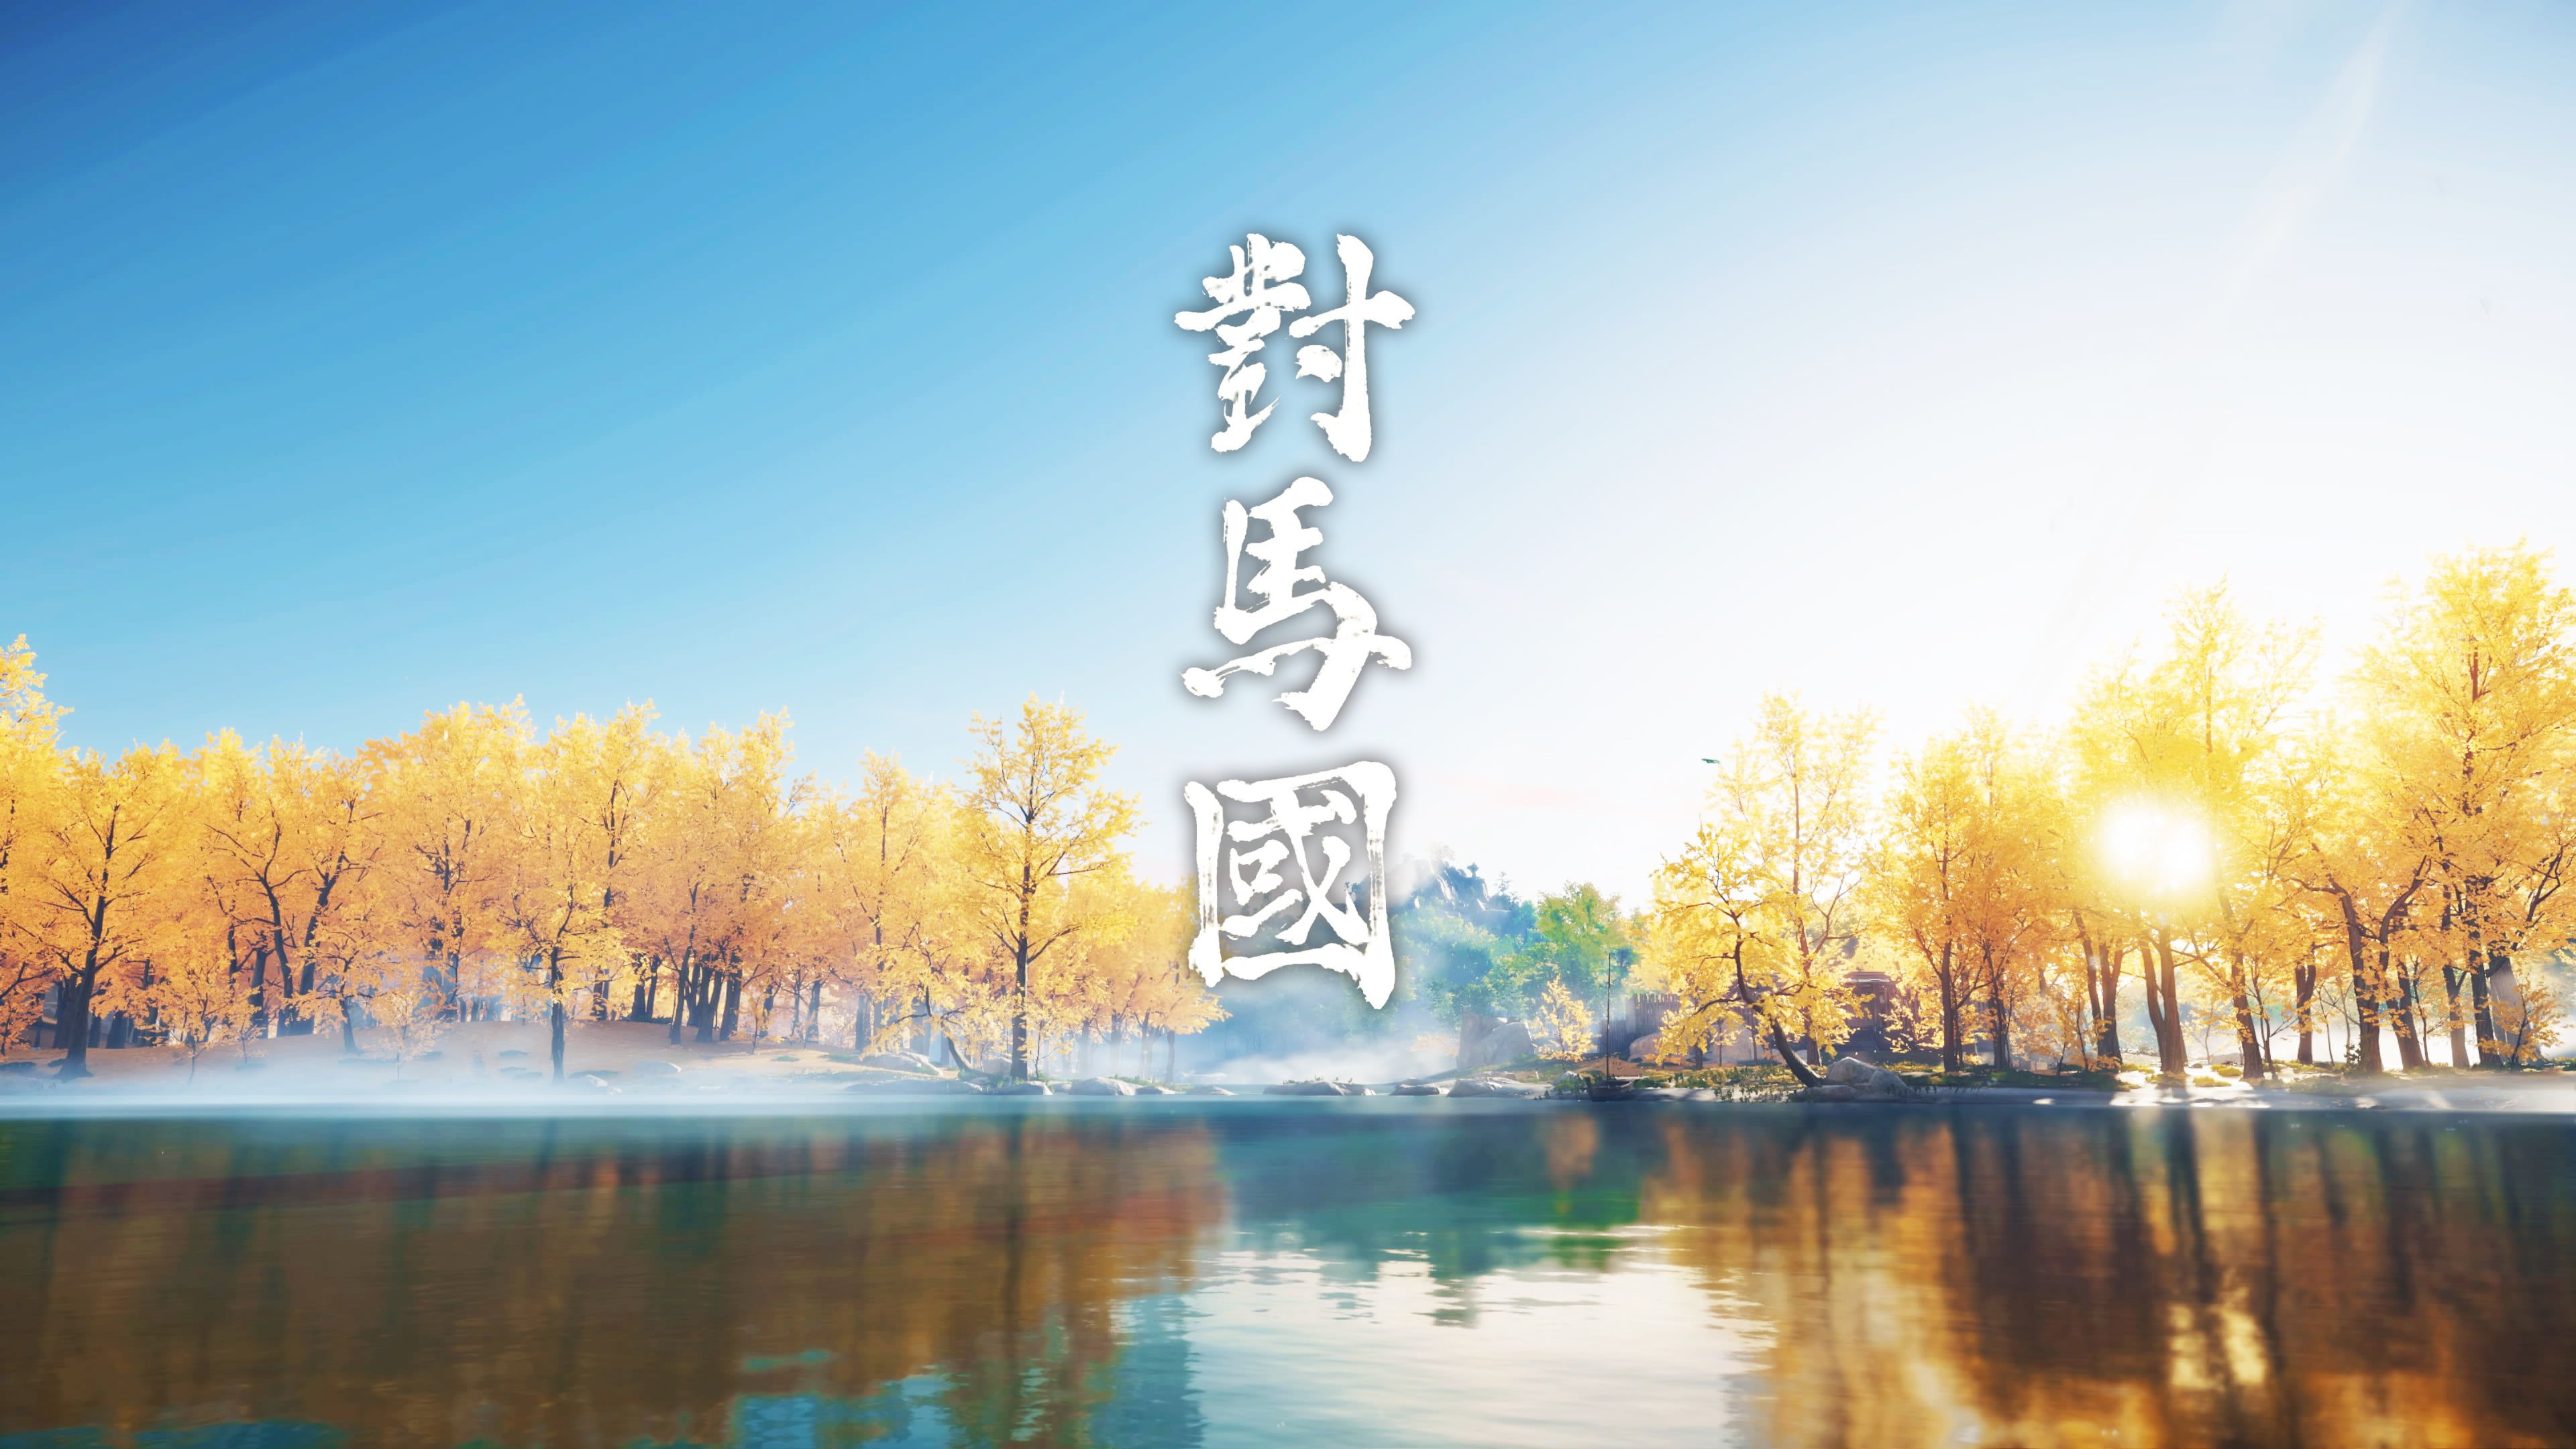 Ghost of Tsushima #lake PlayStation 4 K #wallpaper #hdwallpaper #desktop. Ghost of tsushima, Wallpaper, HD wallpaper